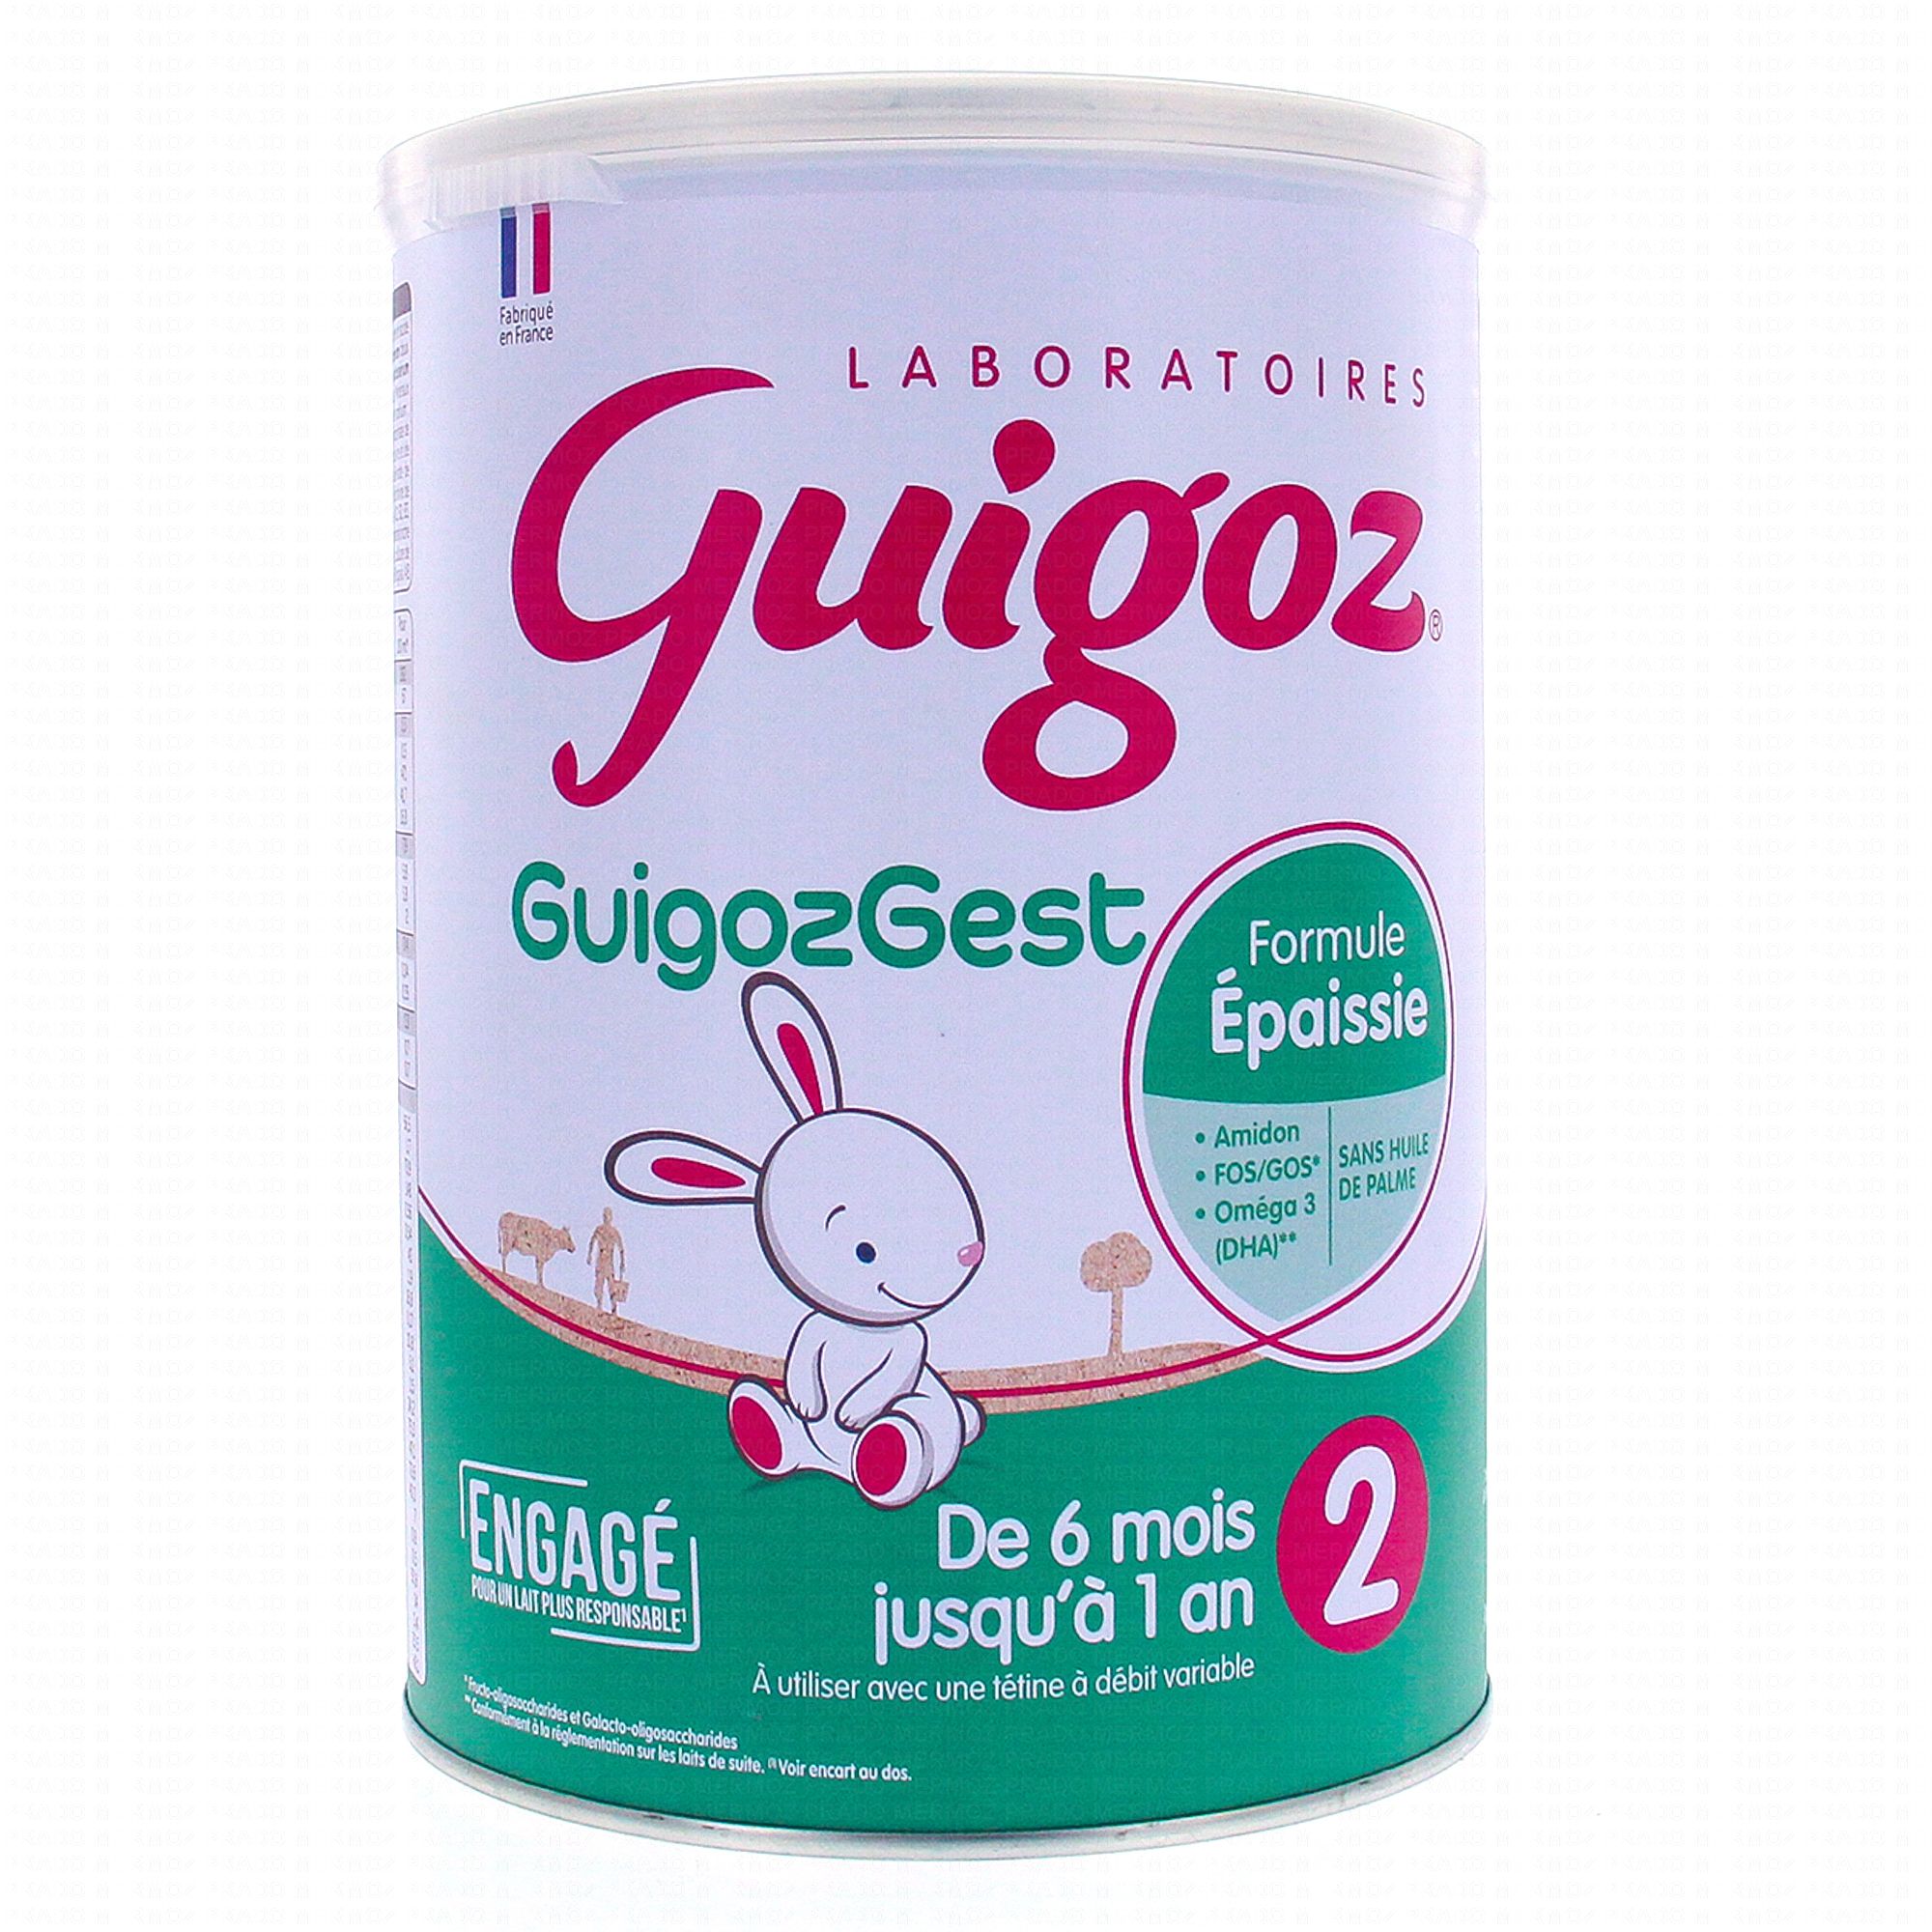 GuigozGest 2em Age 780g Guigoz